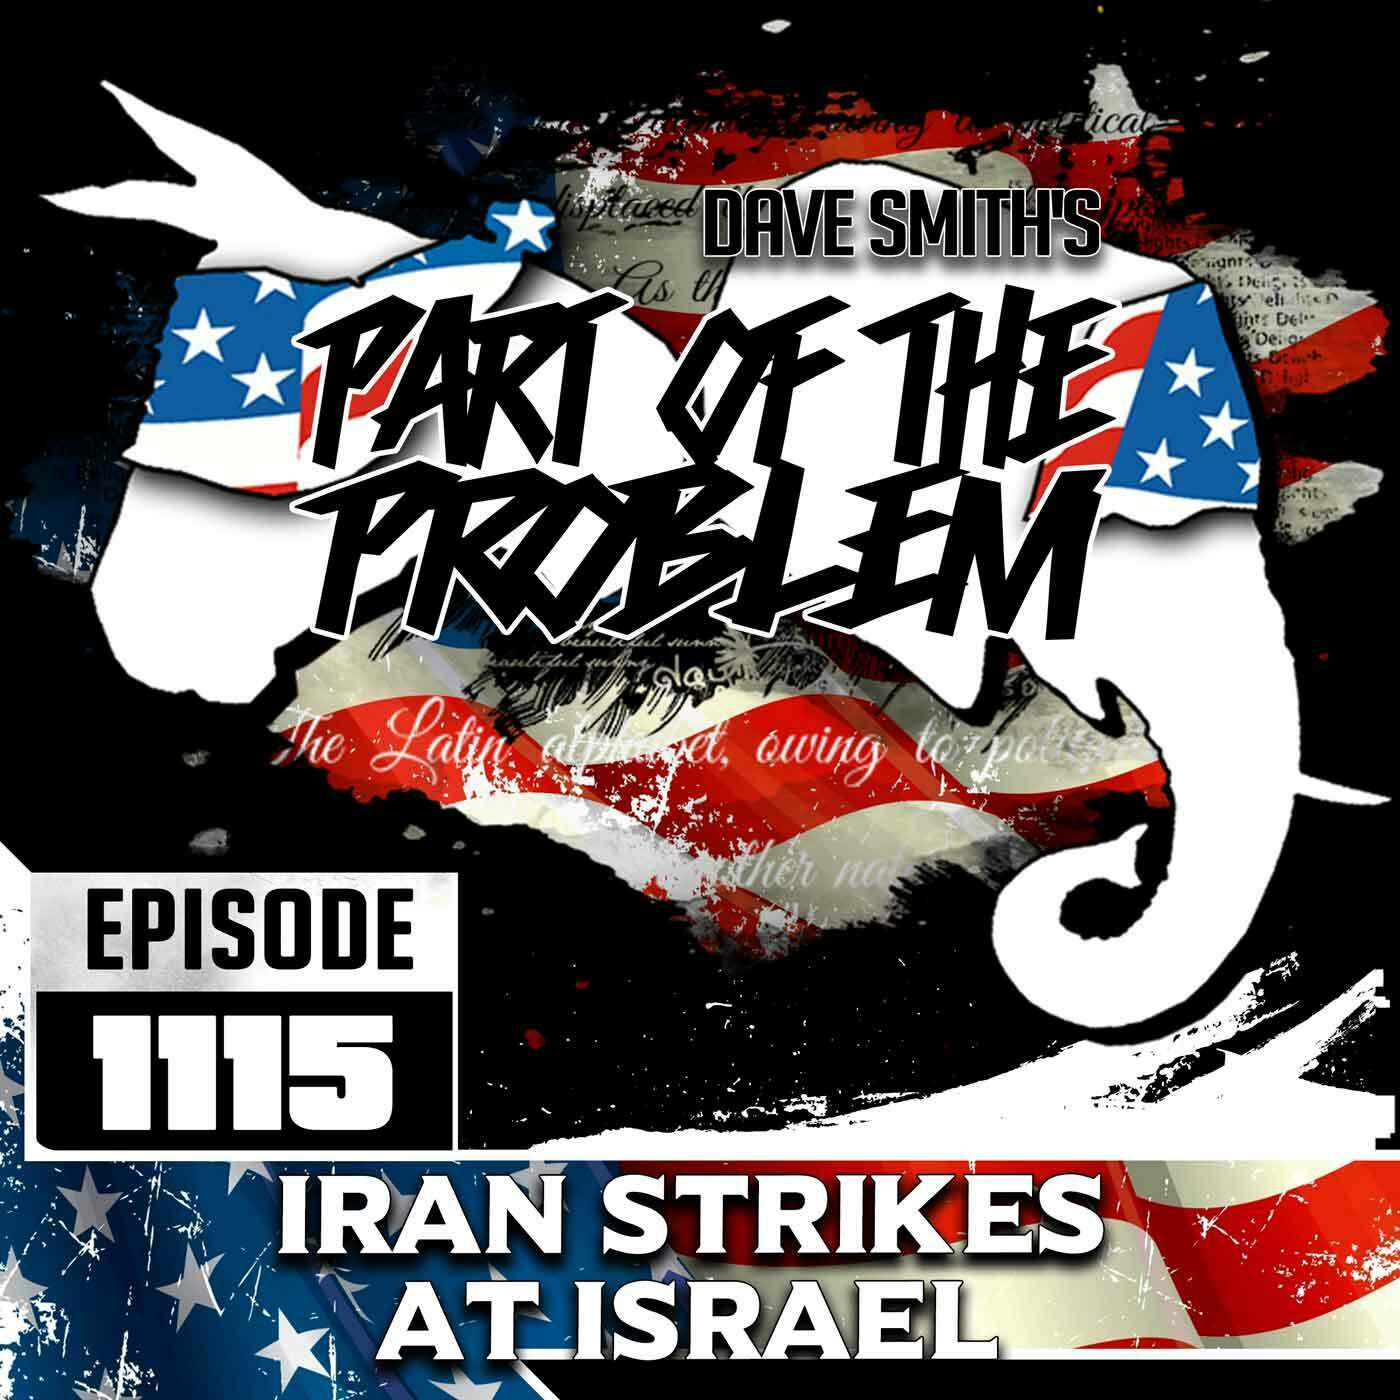 Iran Strikes At Israel